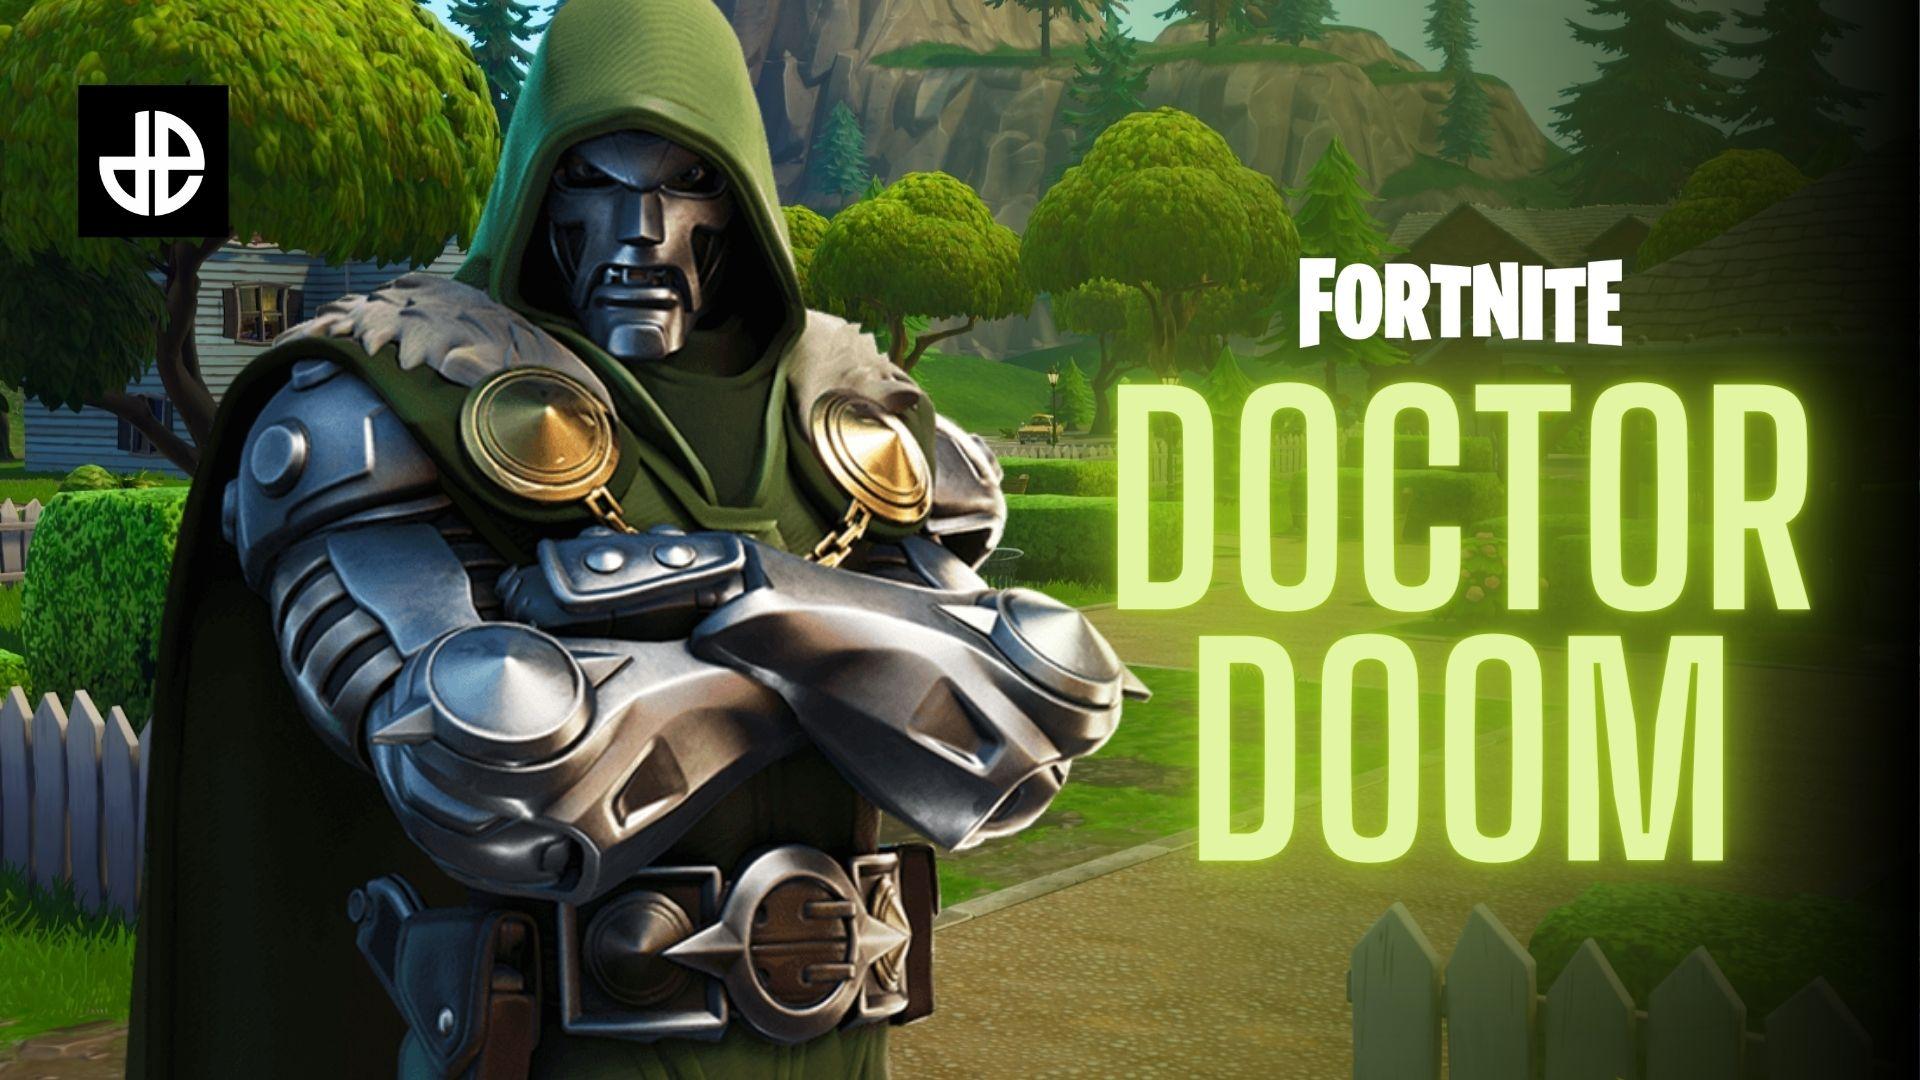 Doctor Doom in Fortnite